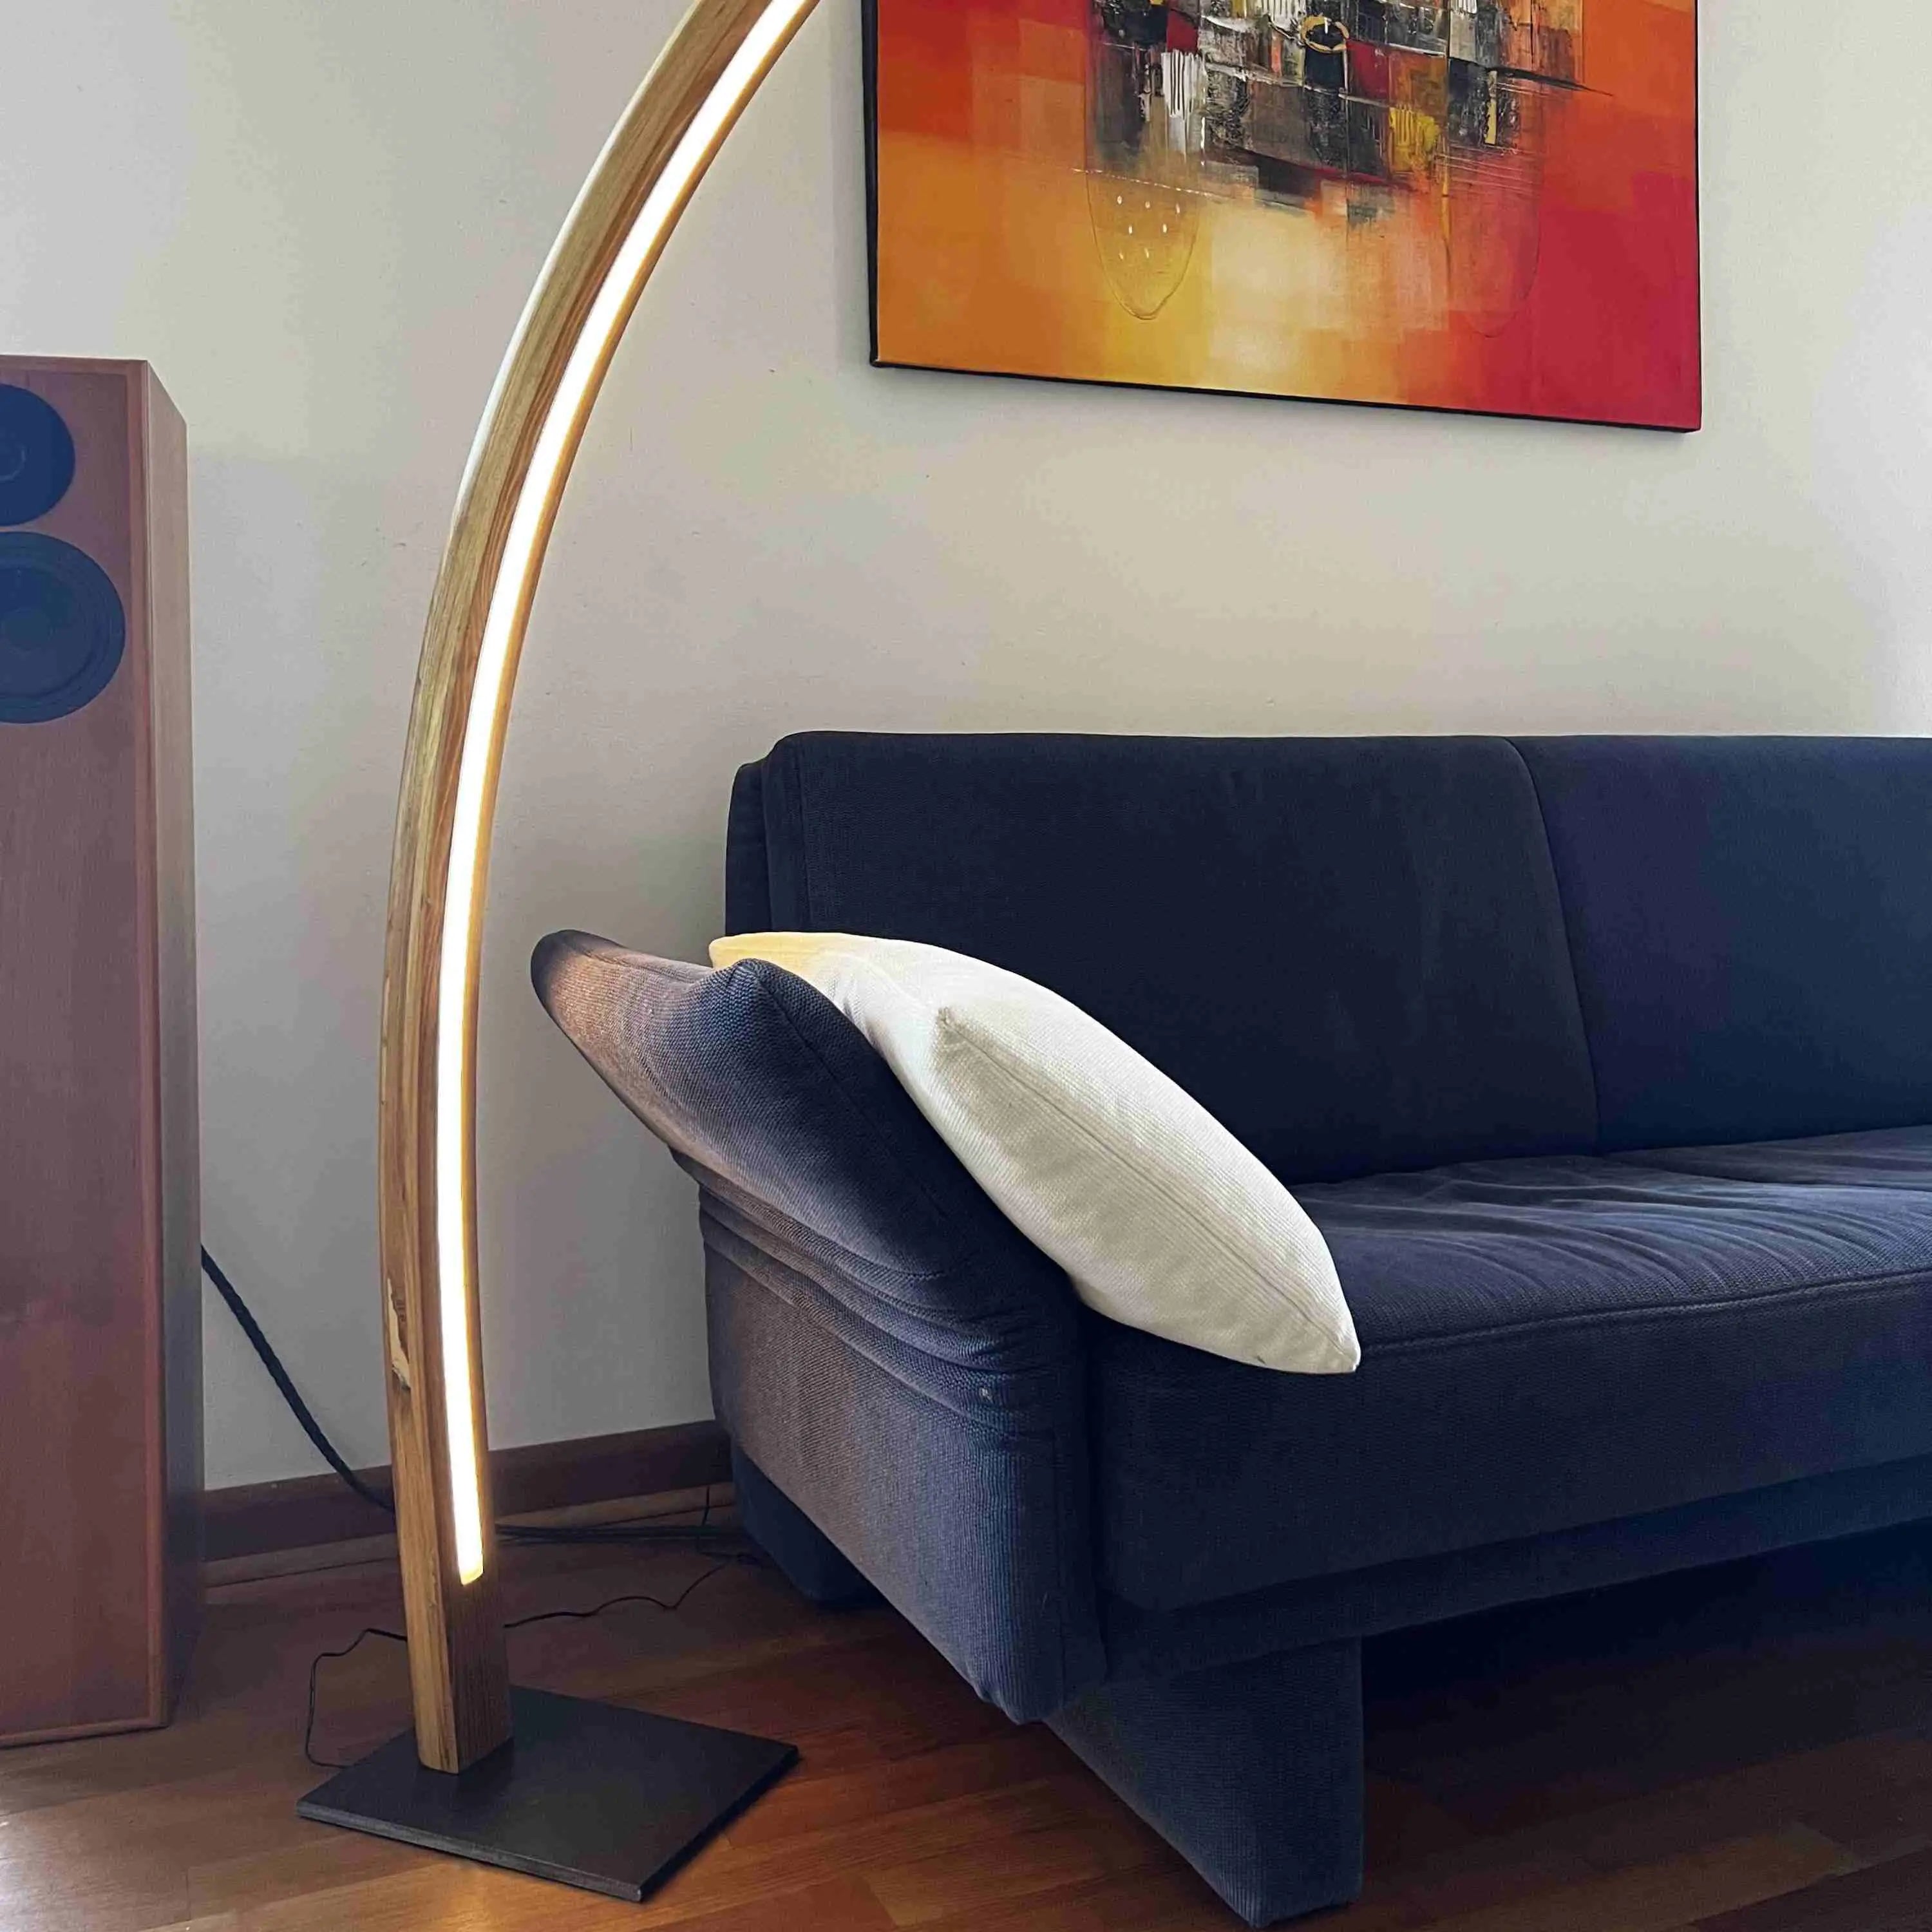 Holen Sie sich mit dieser Stehlampe aus Holz ein Stück Natur und Gemütlichkeit in Ihr Zuhause.